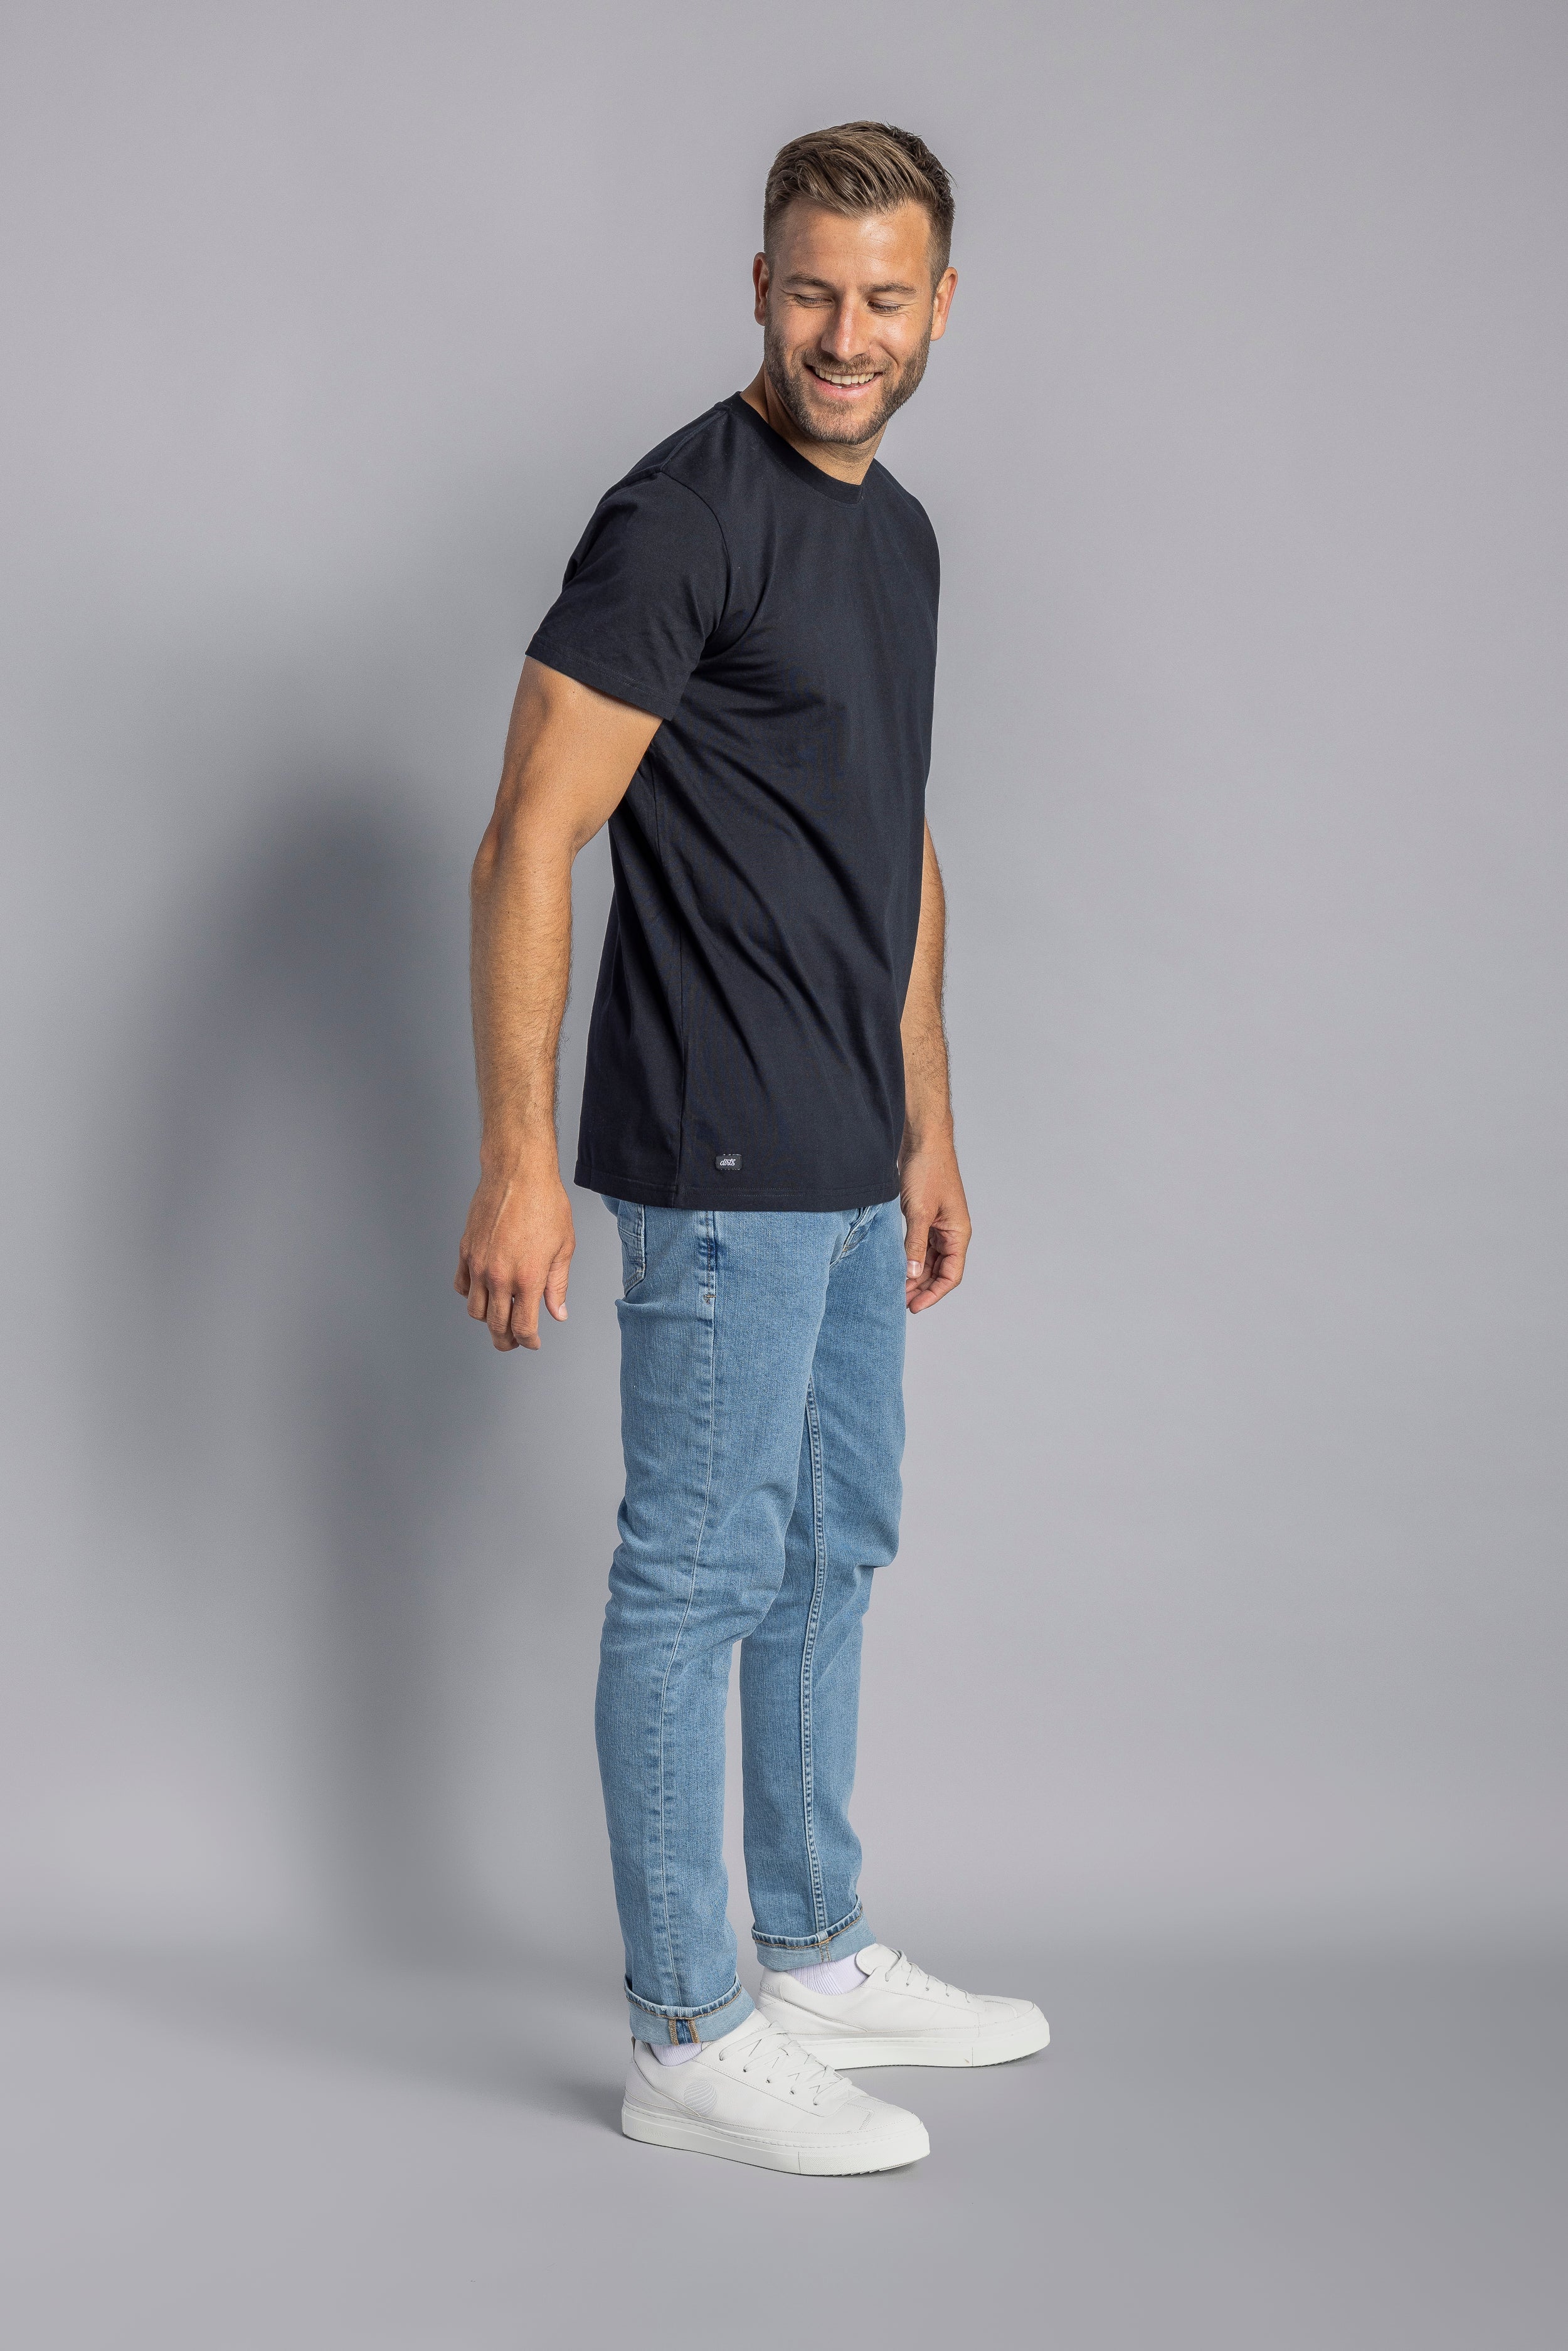 T-shirt Slim Premium Blank noir en coton 100% biologique de DIRTS